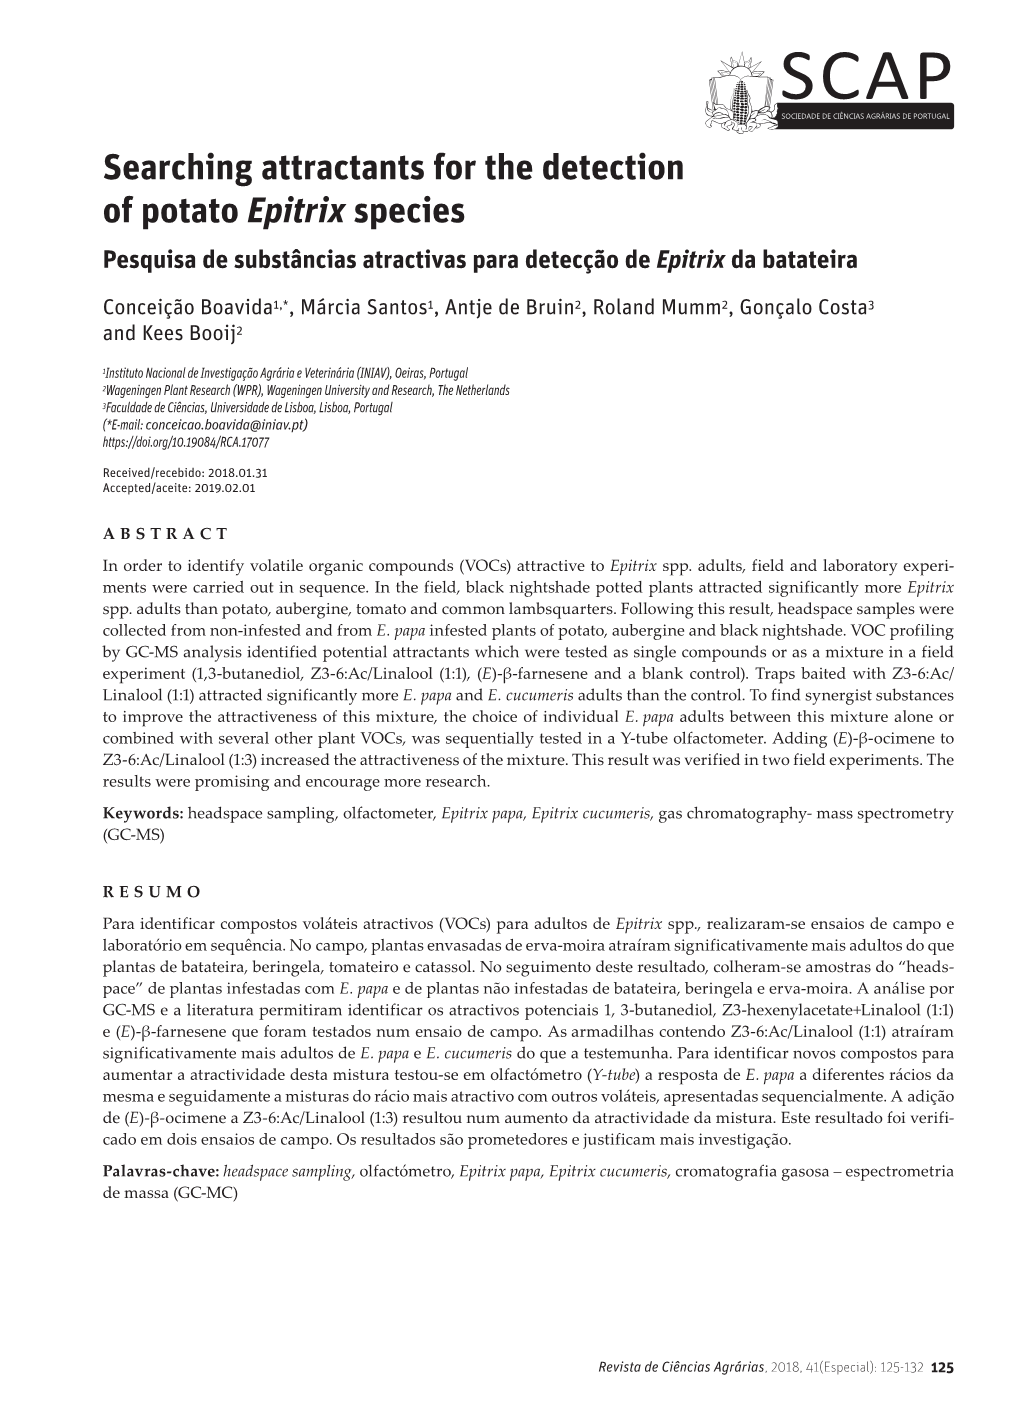 Searching Attractants for the Detection of Potato Epitrix Species Pesquisa De Substâncias Atractivas Para Detecção De Epitrix Da Batateira